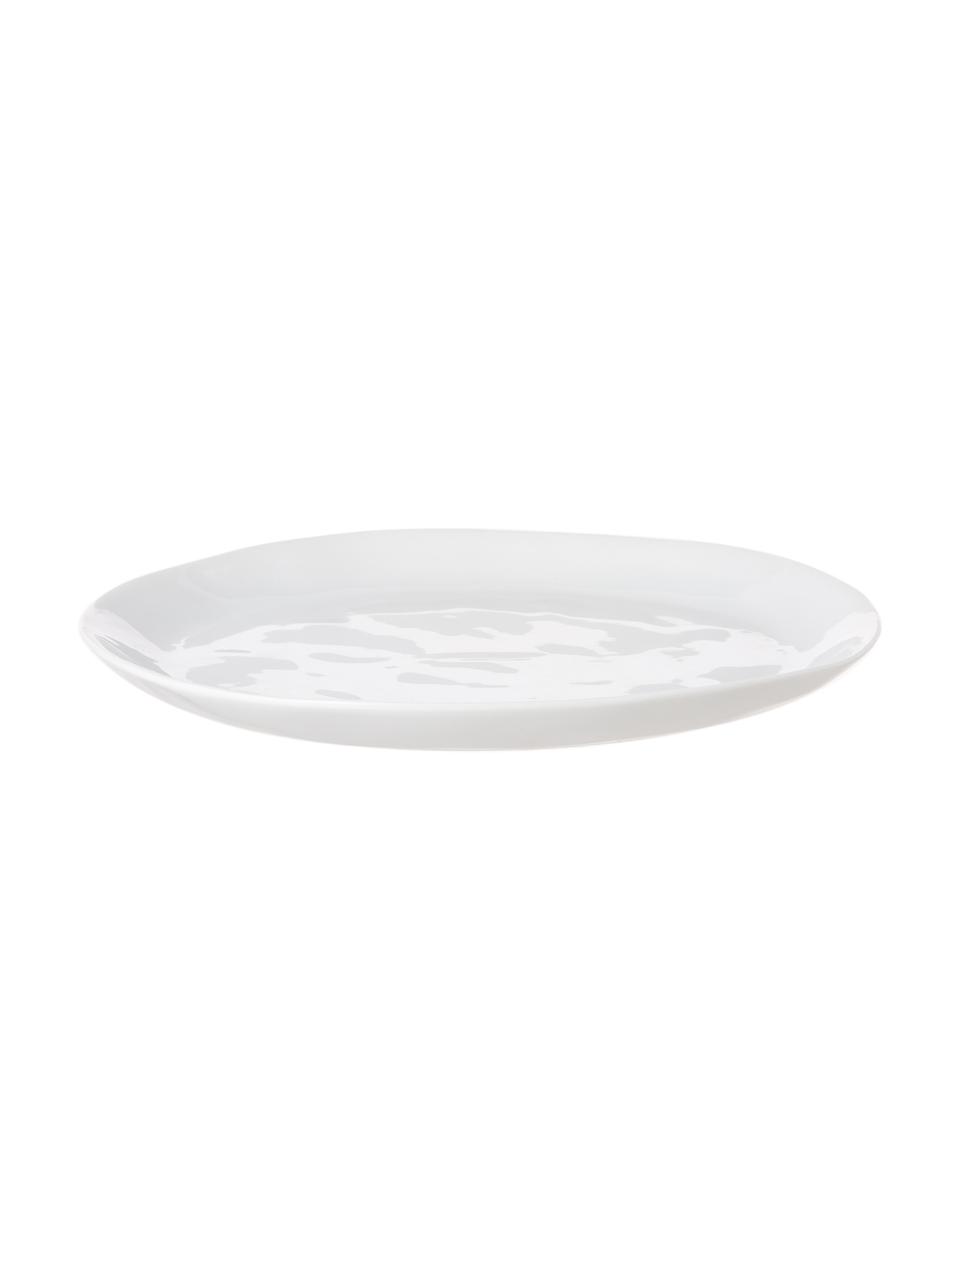 Oválny raňajkový tanier s nerovným povrchom Porcelino, 4 ks, Porcelán, úmyselne nerovný, Biela, D 23 x Š 19 cm